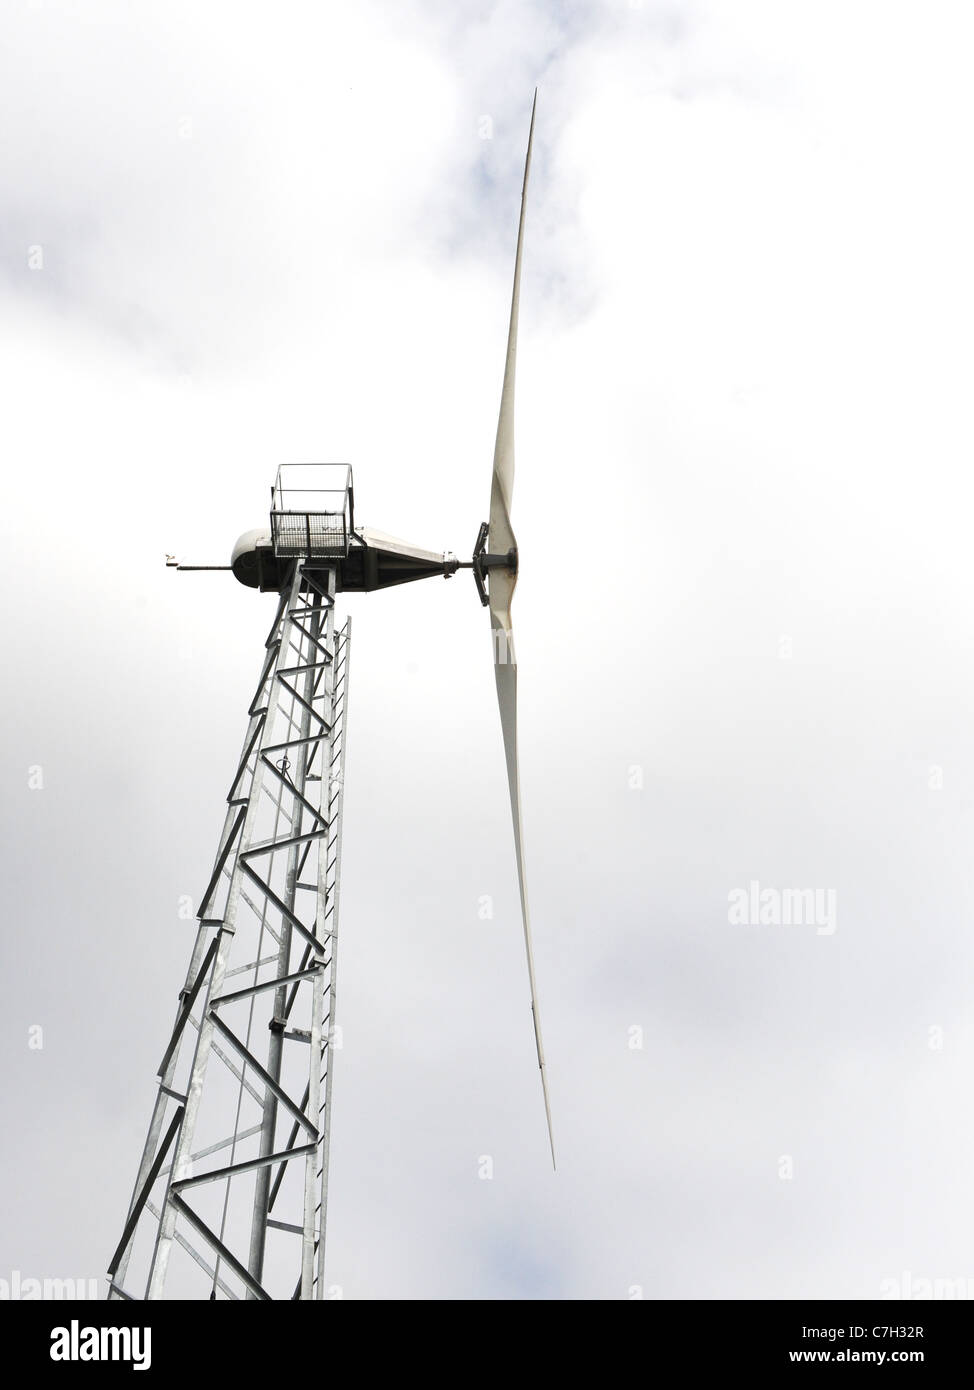 Un corte de una turbina eólica contra un cielo nublado. Foto de stock